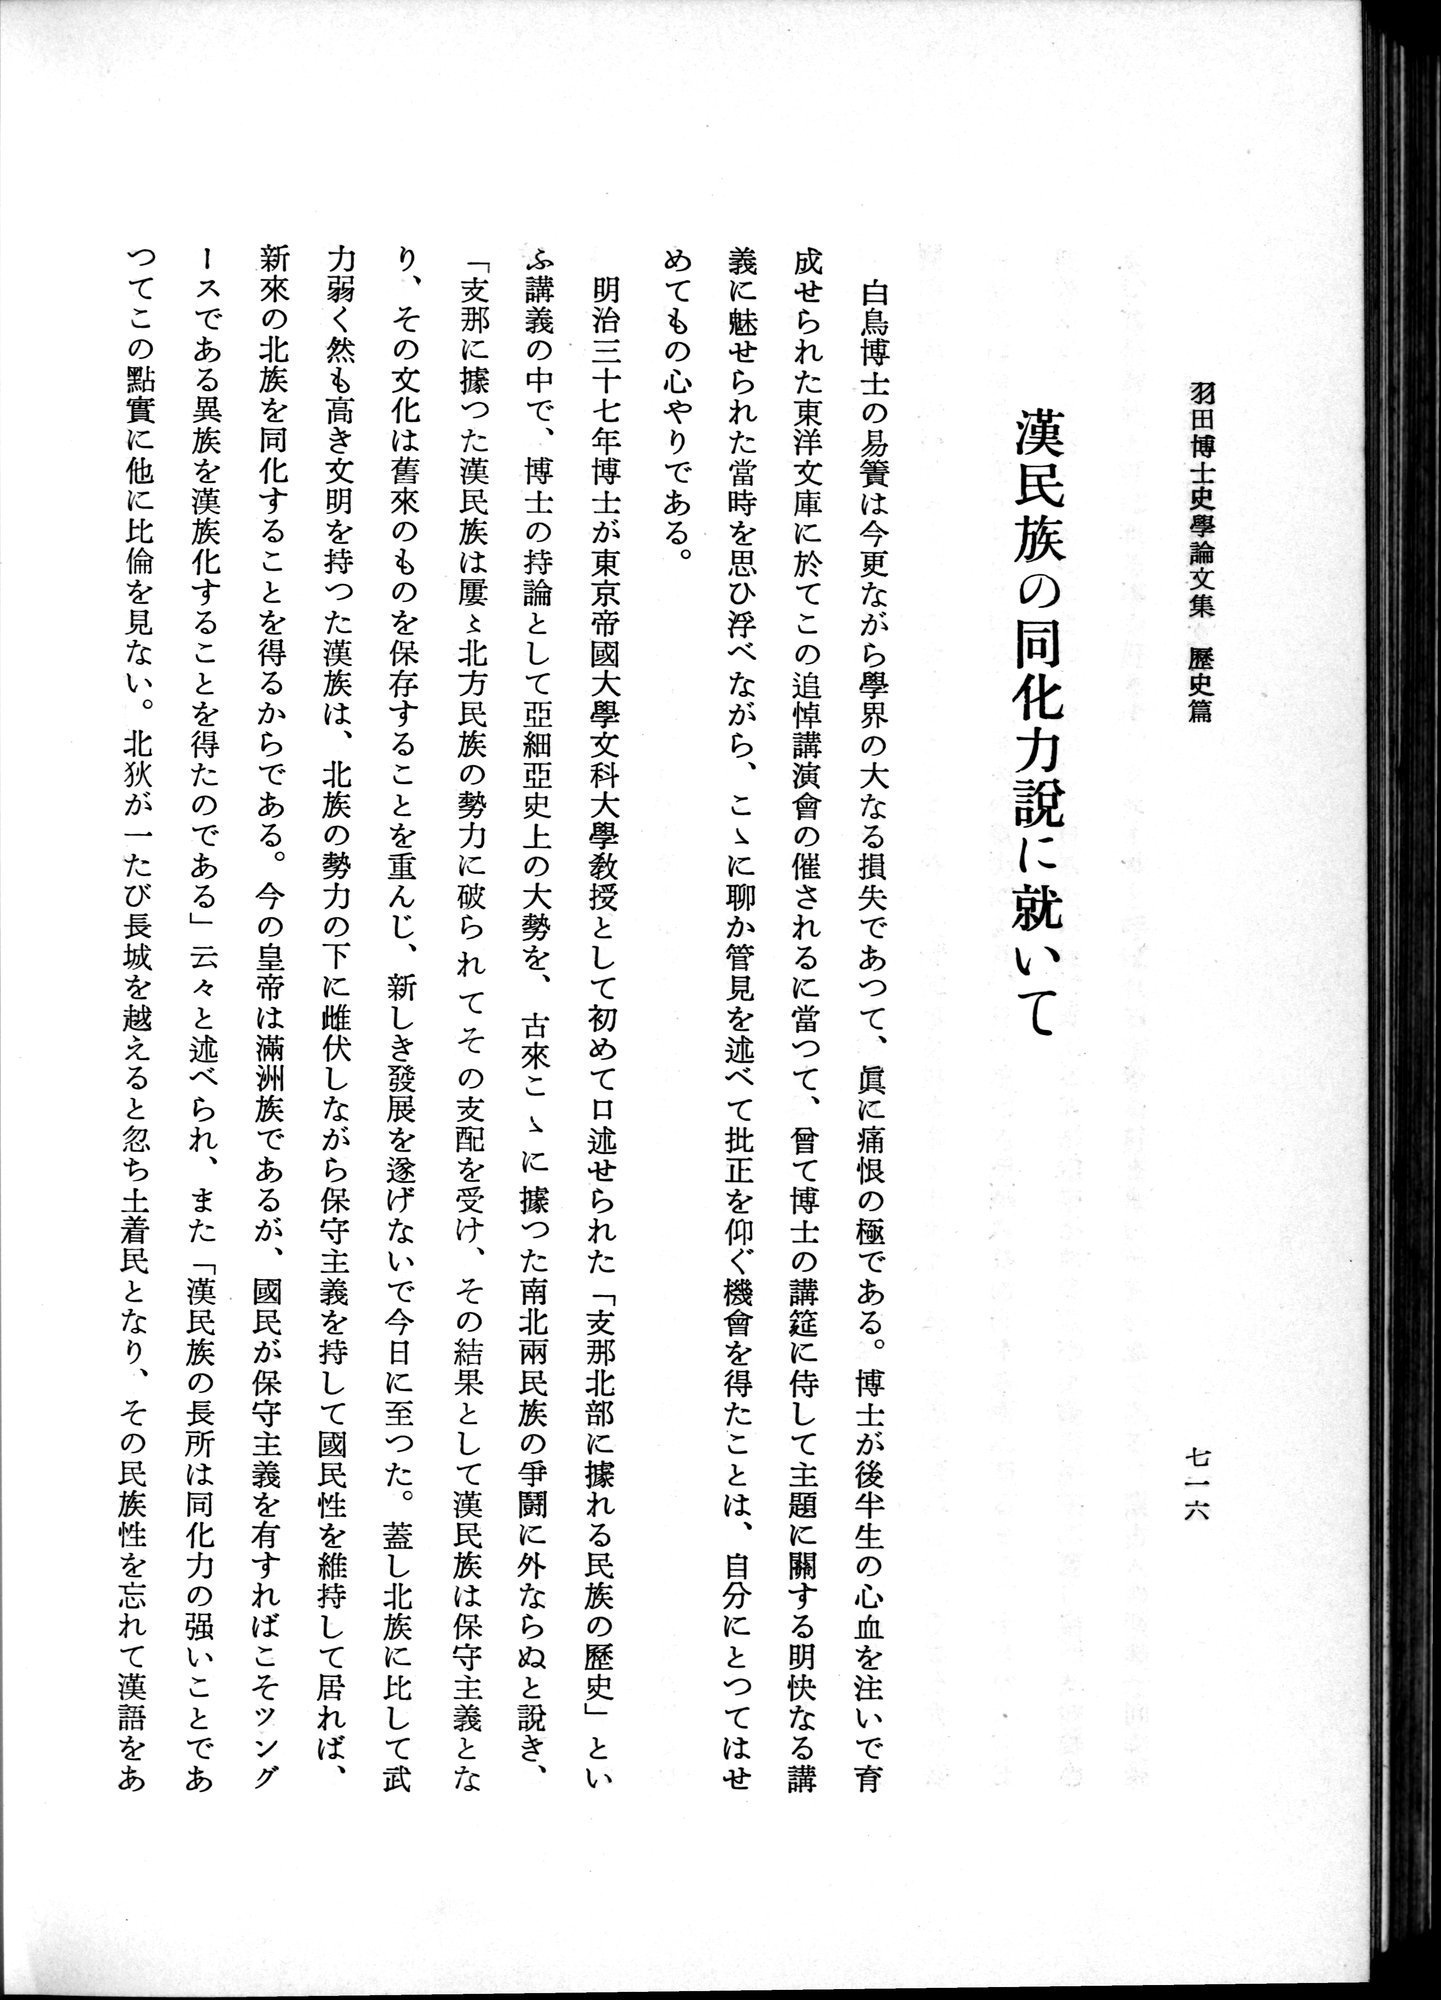 羽田博士史学論文集 : vol.1 / 754 ページ（白黒高解像度画像）